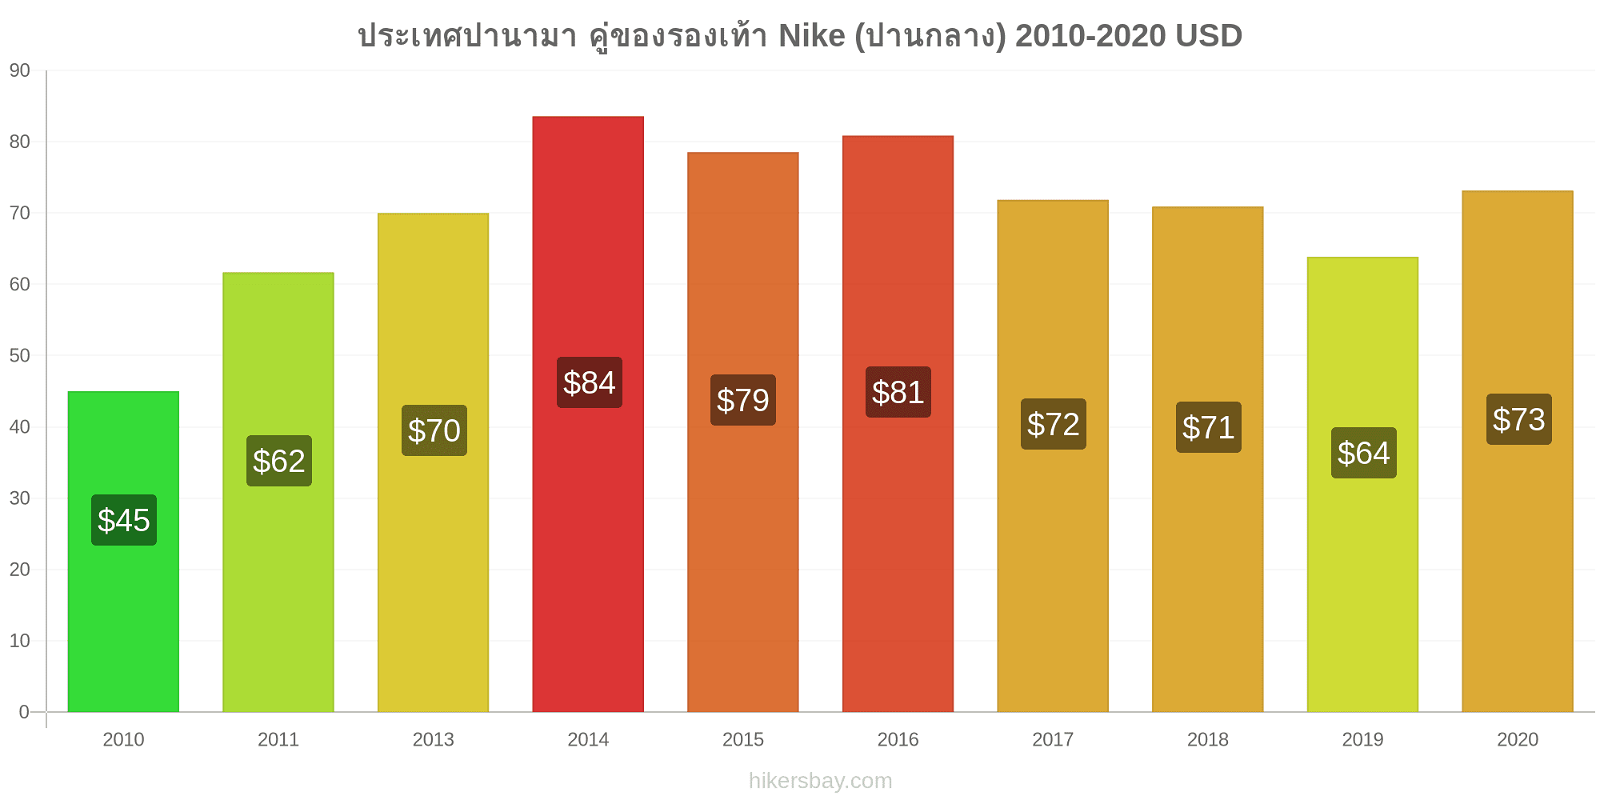 ประเทศปานามา การเปลี่ยนแปลงราคา คู่ของรองเท้า Nike (ปานกลาง) hikersbay.com